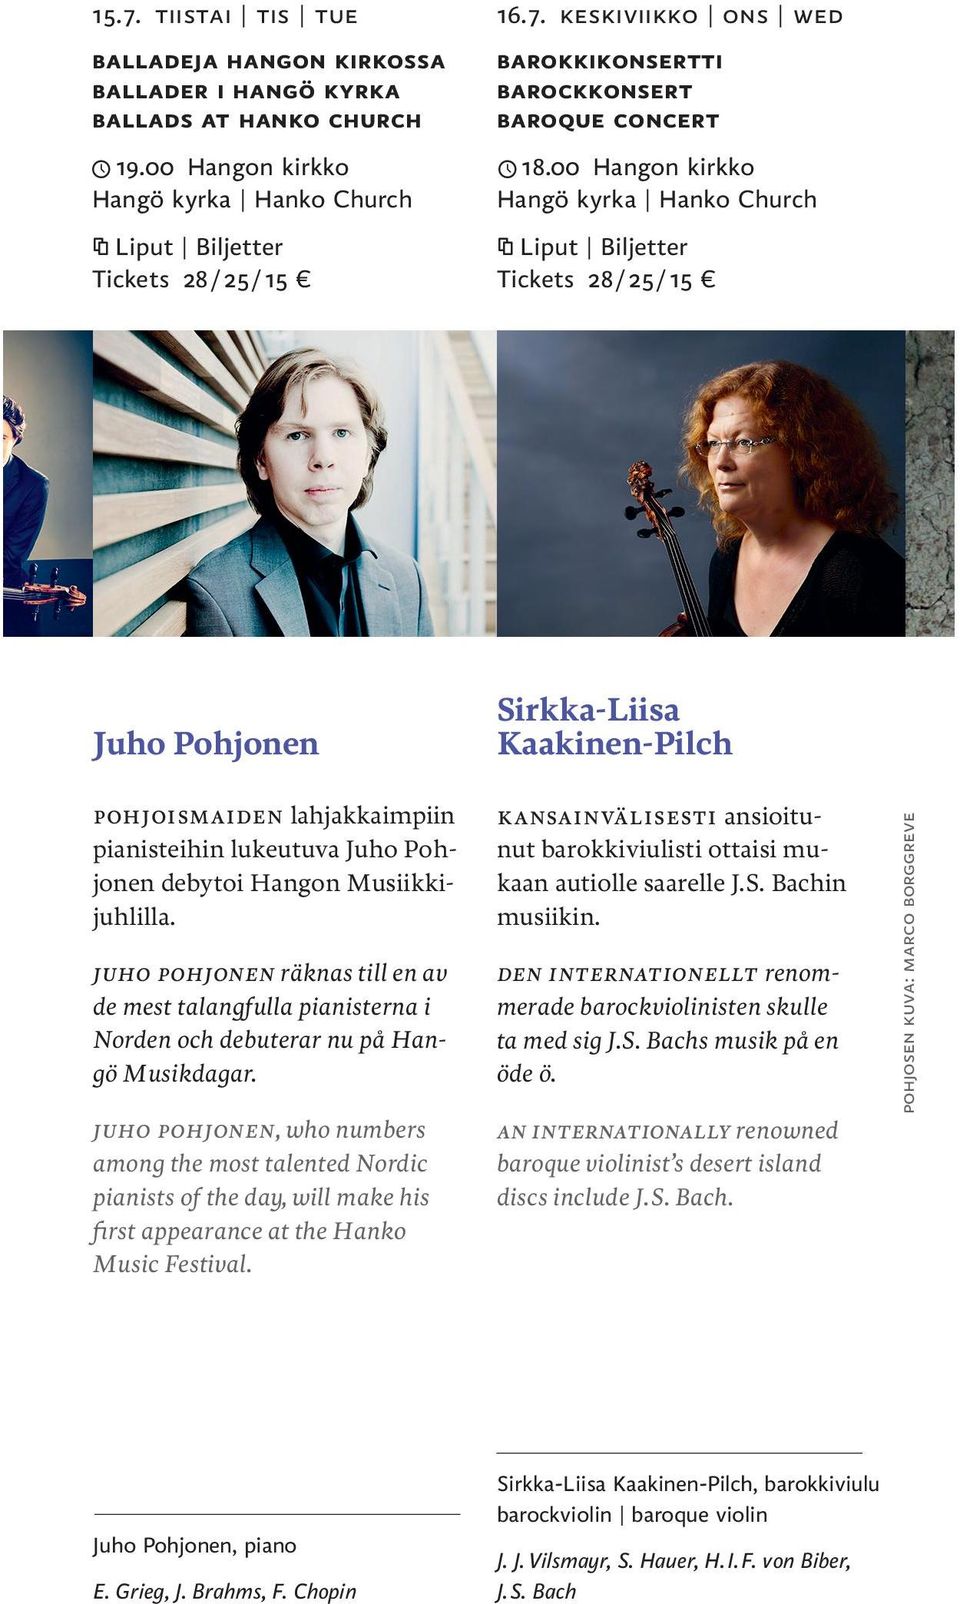 Juho Pohjonen räknas till en av de mest talangfulla pianisterna i Norden och debuterar nu på Hangö Musikdagar.